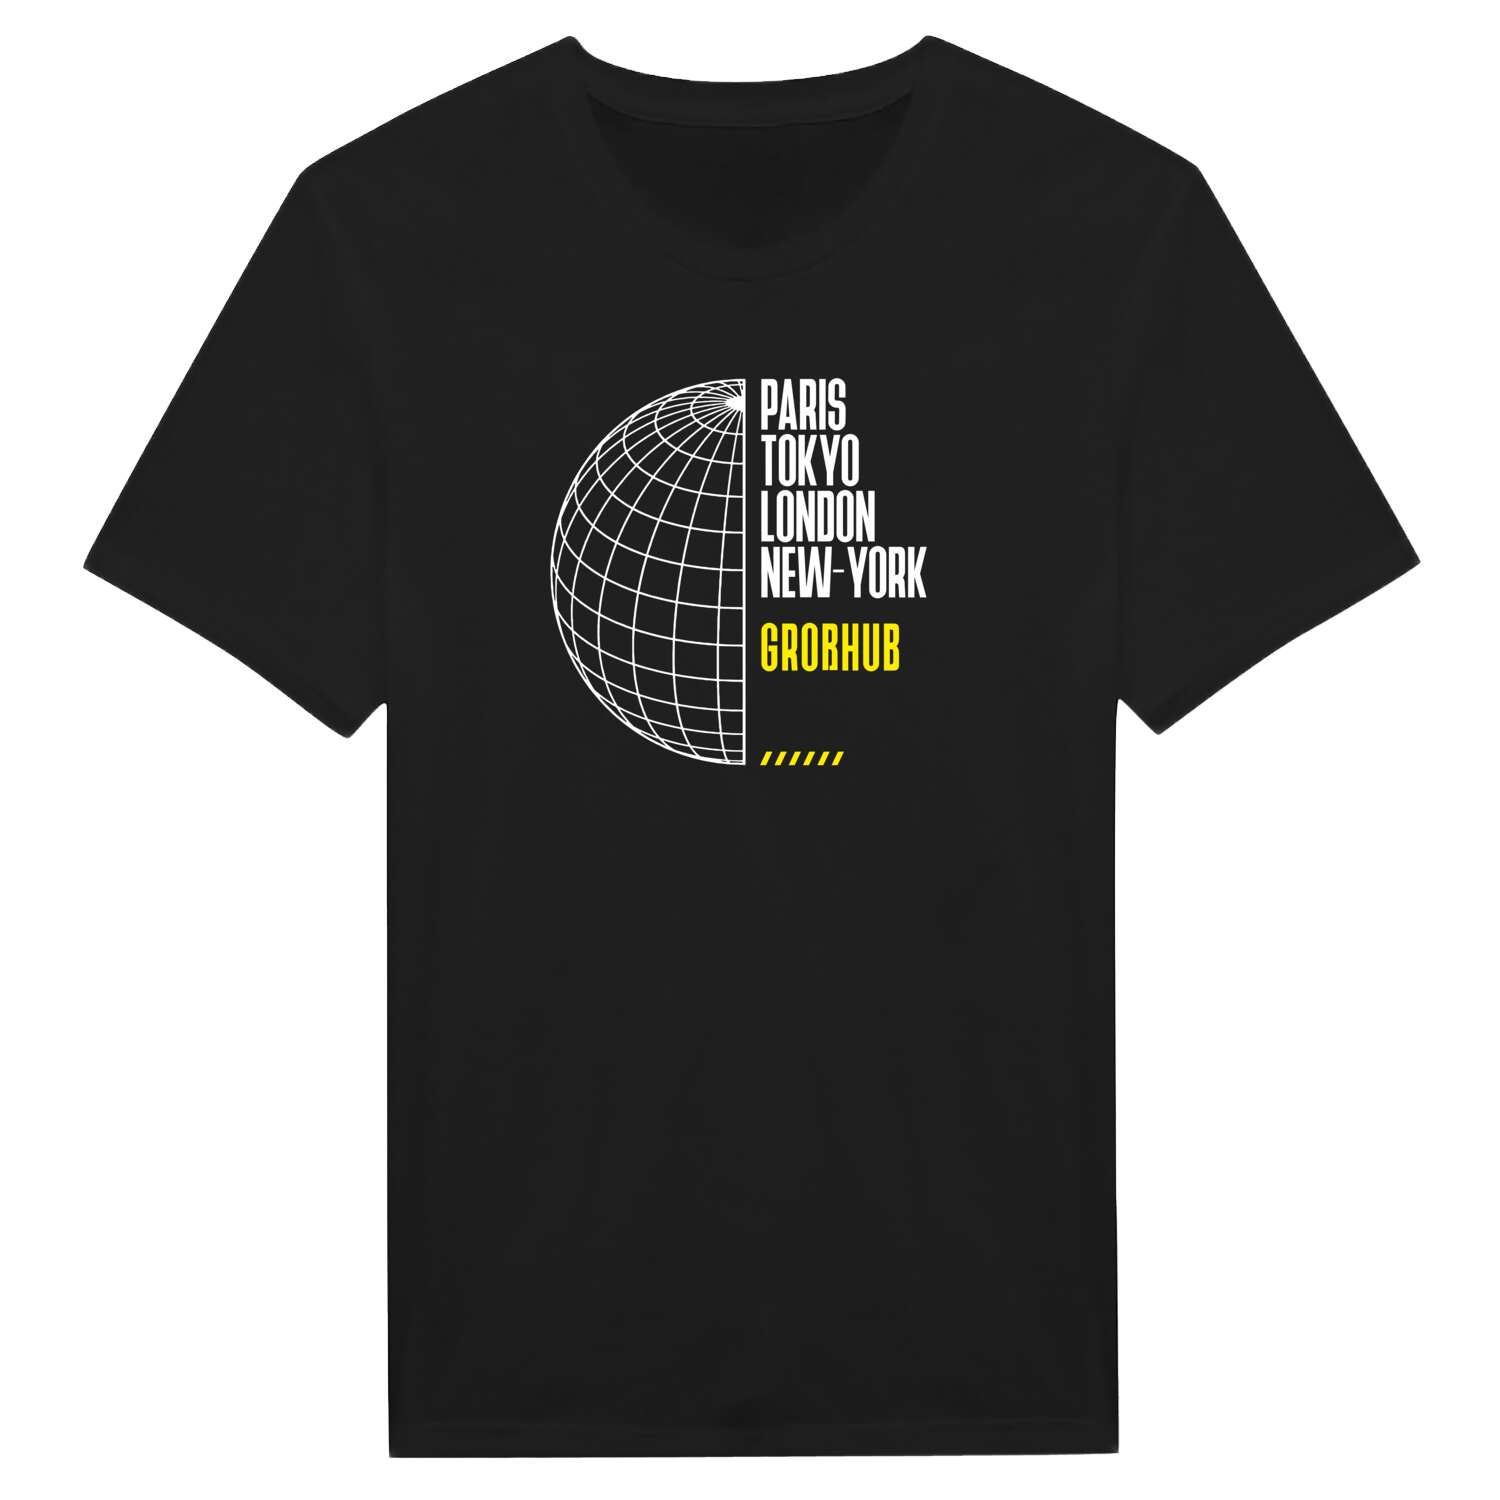 Großhub T-Shirt »Paris Tokyo London«